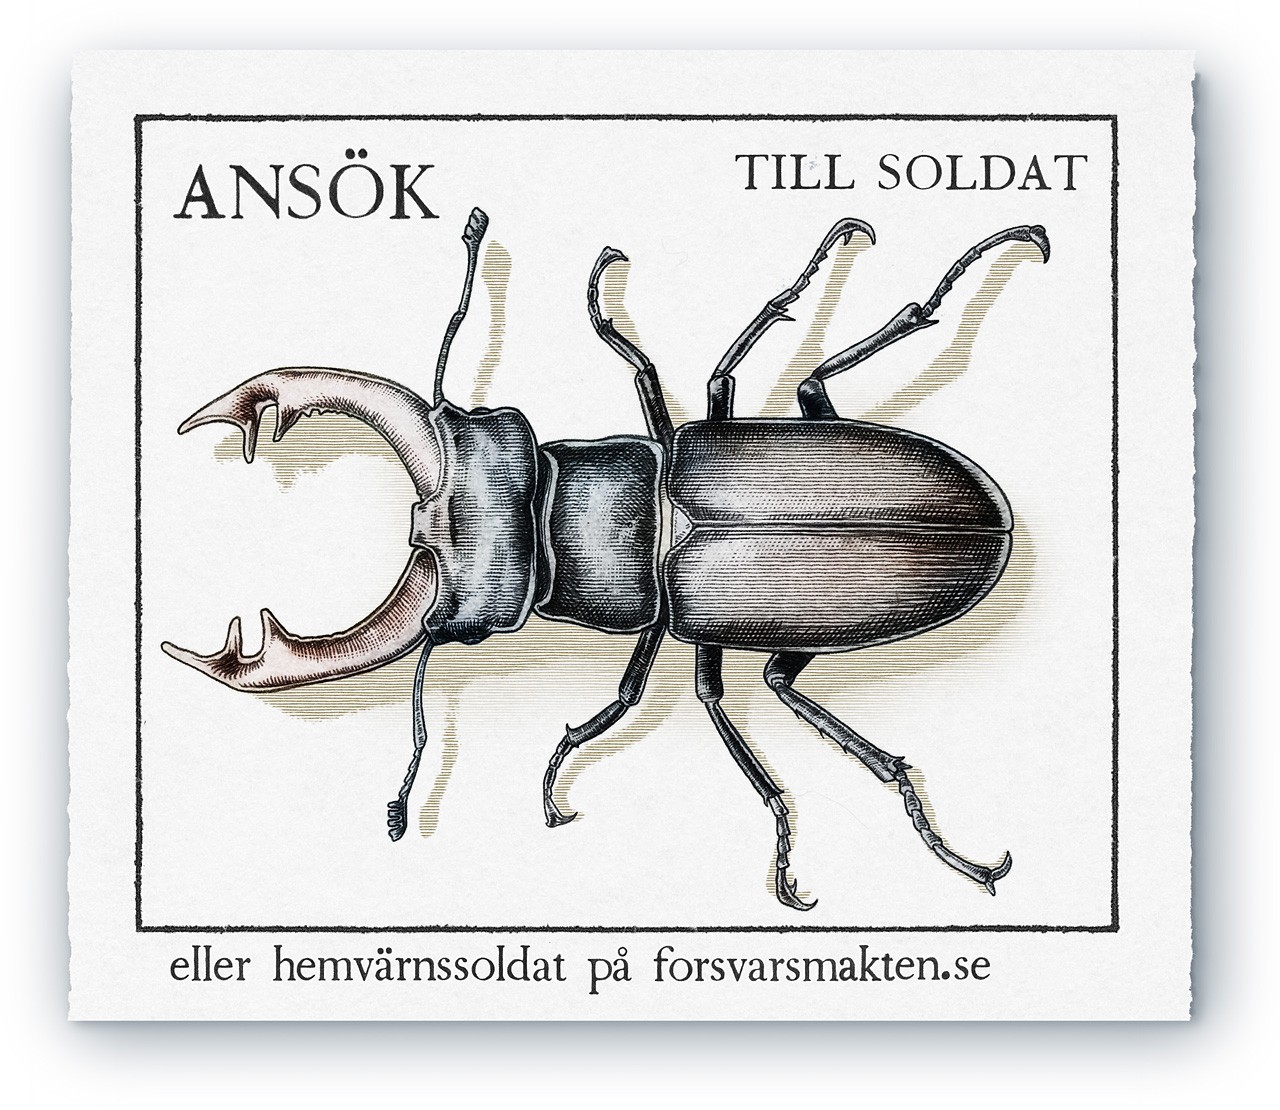 A stamp for försvarsmakten with a insect ekoxe insekt skalbagge bug